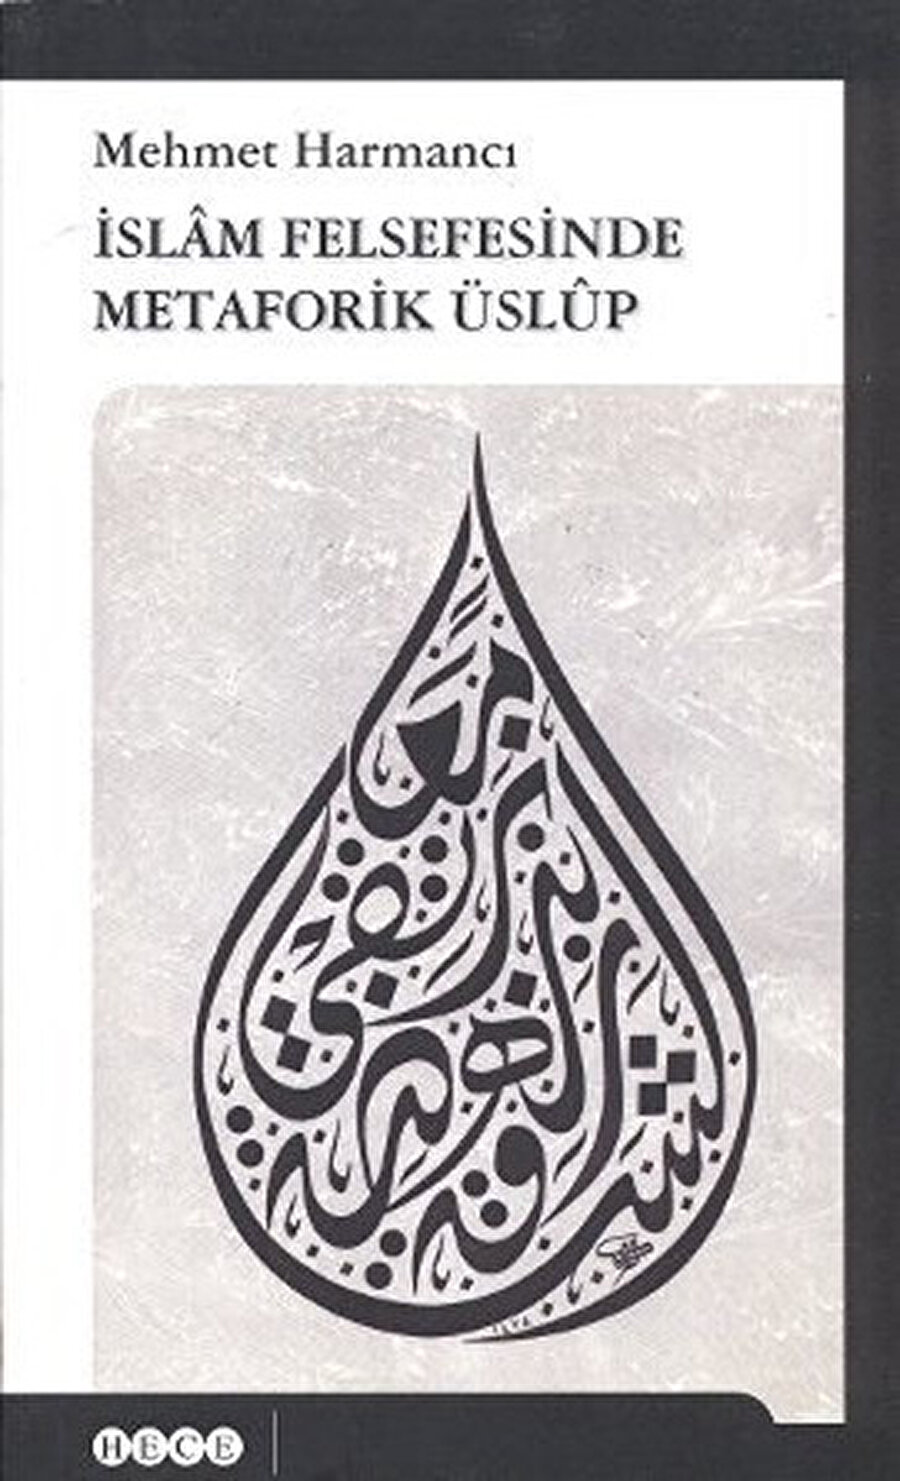 İslam Felsefesinde Metaforik Üslup, Mehmet Harmancı, Hece, 2012.